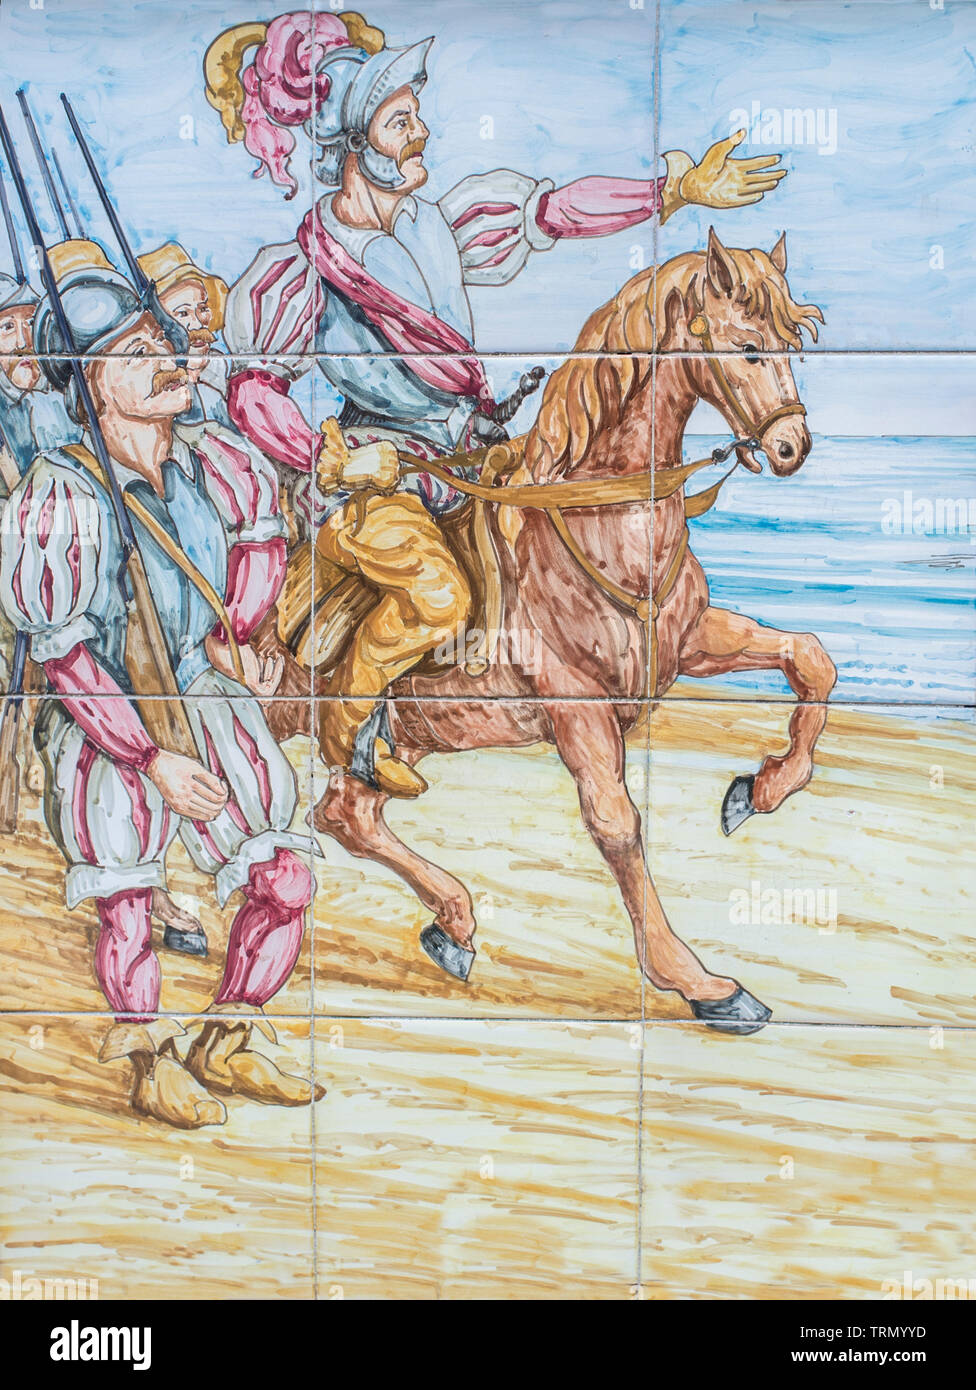 Hernán Cortes llega a México. Conquista de la escena del Imperio Azteca. Pared de azulejos vidriados Foto de stock